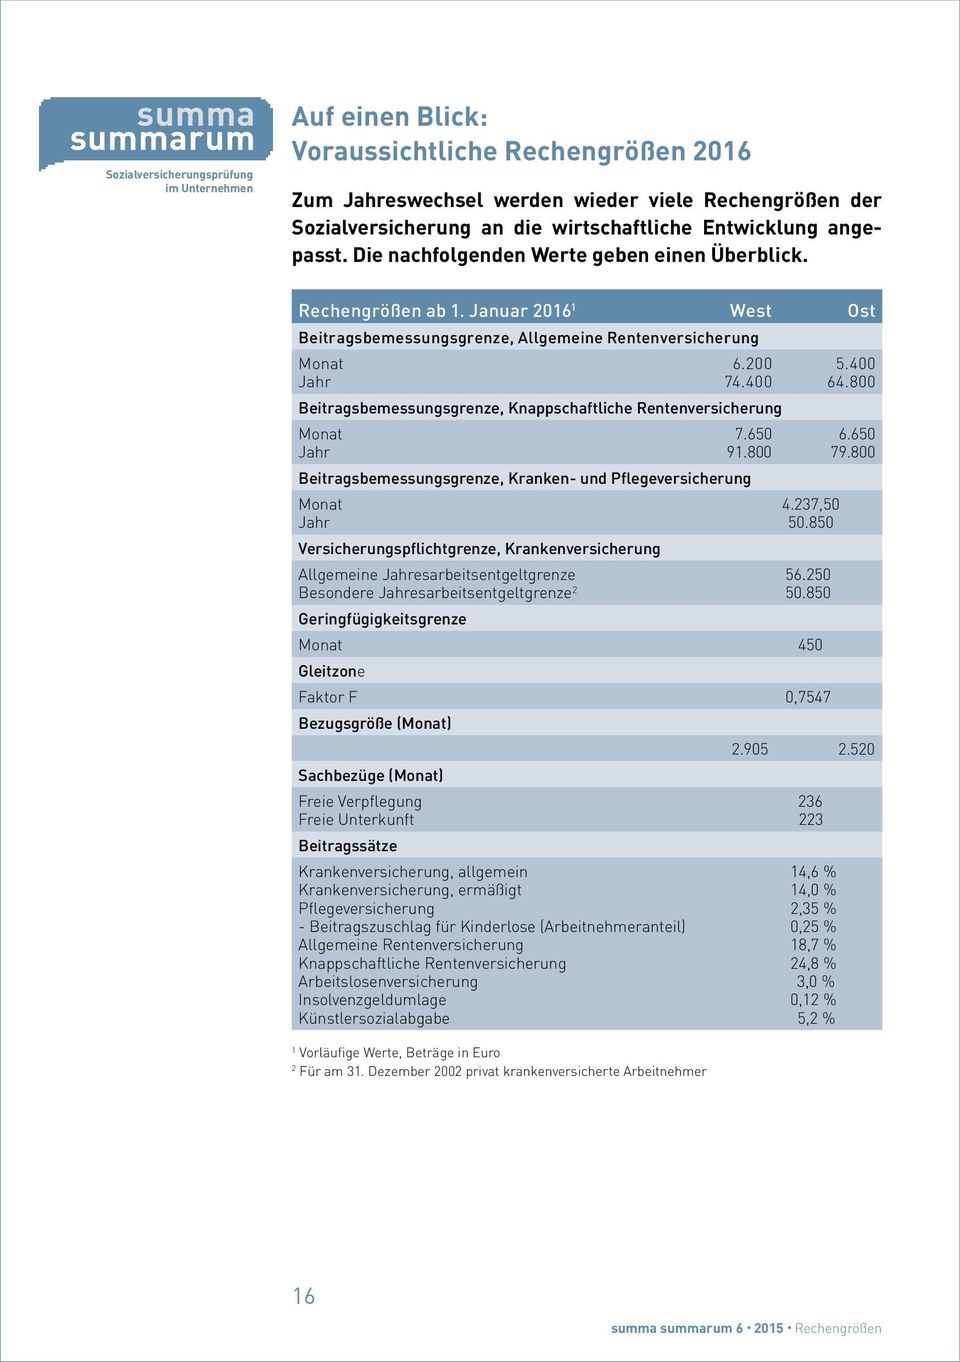 200 74.400 Beitragsbemessungsgrenze, Knappschaftliche Rentenversicherung Monat Jahr 7.650 91.